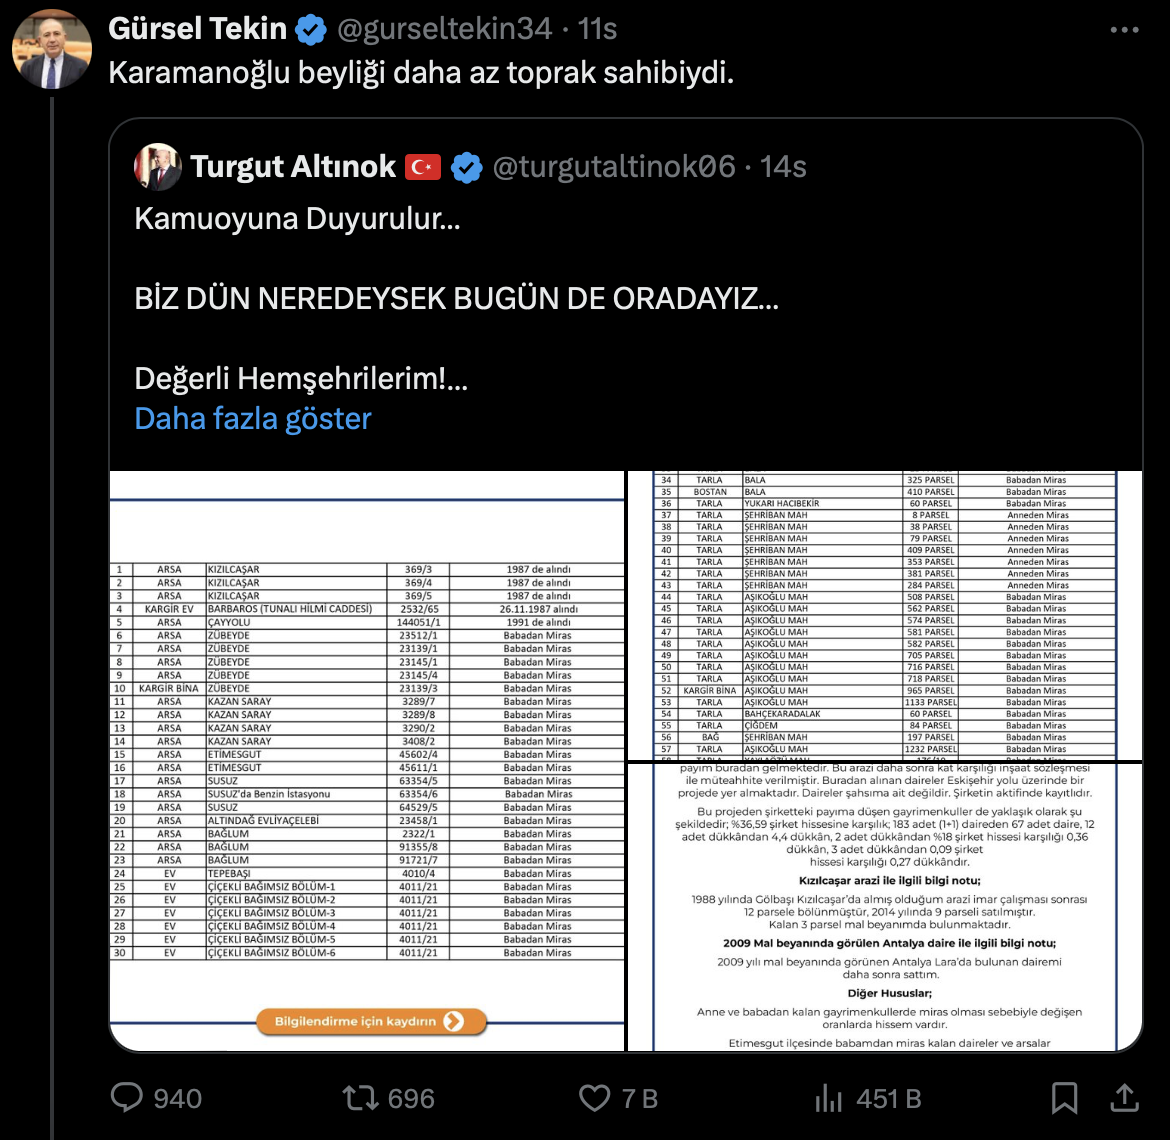 Turgut Altınok'un mal varlığını açıklamasına sosyal medyada yorum yağdı: "Babadan miras olarak Ankara kalmış"